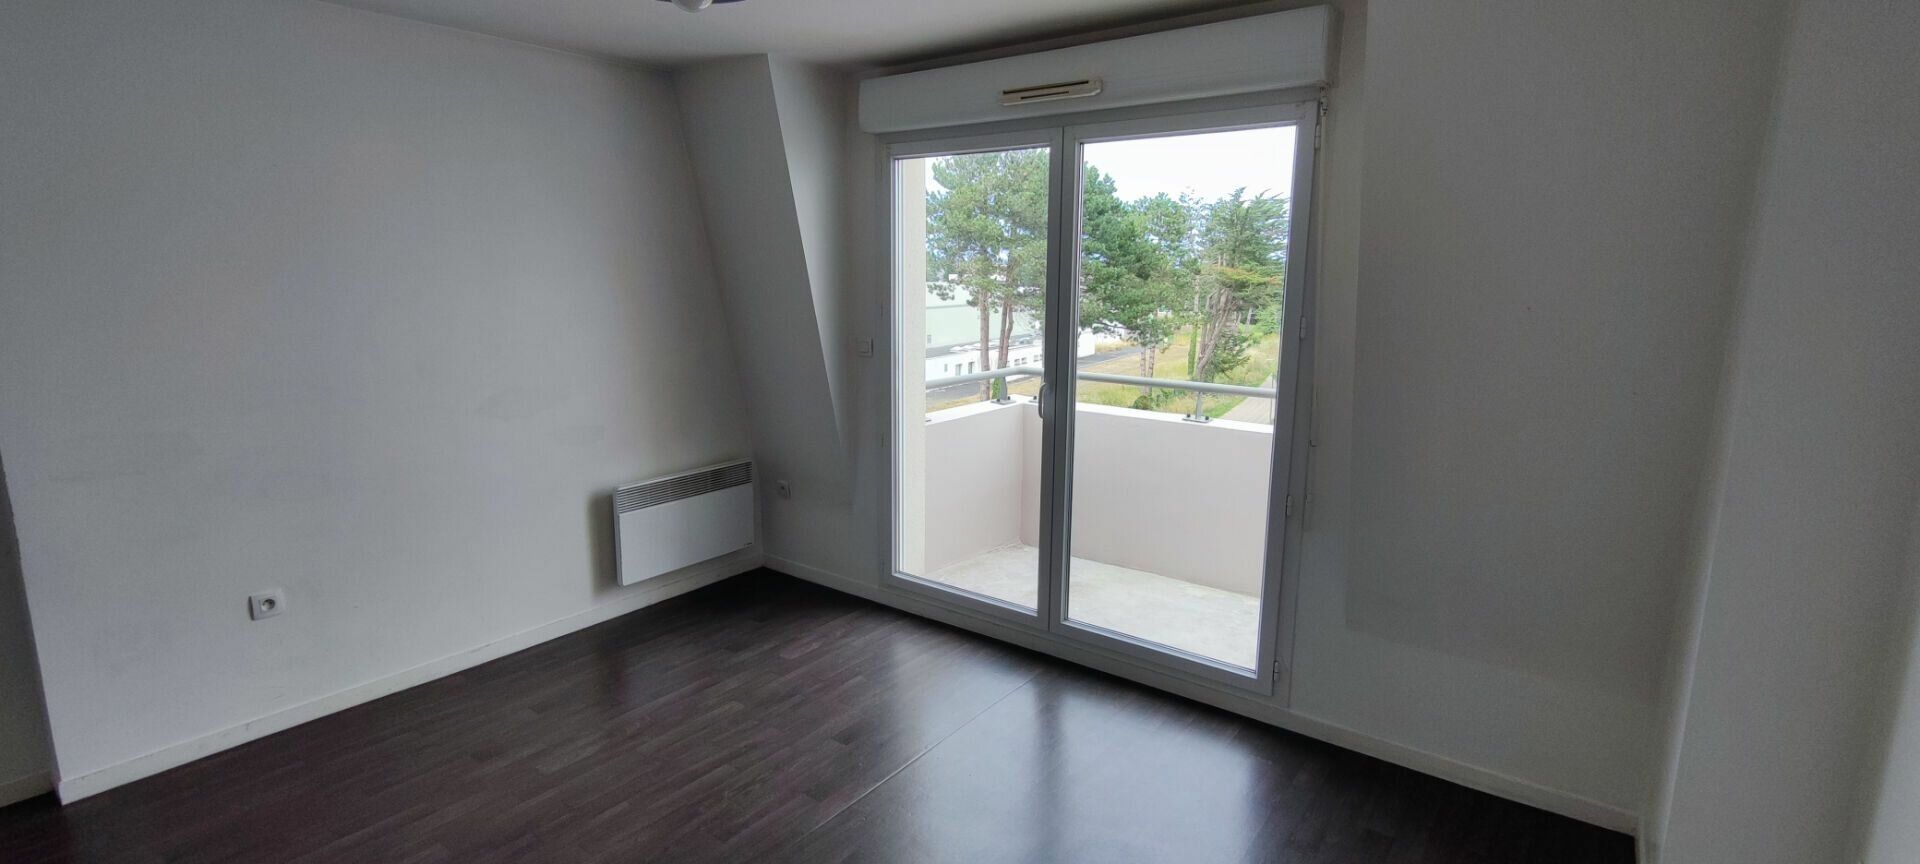 Appartement à vendre 2 38.36m2 à Saint-Brieuc vignette-9